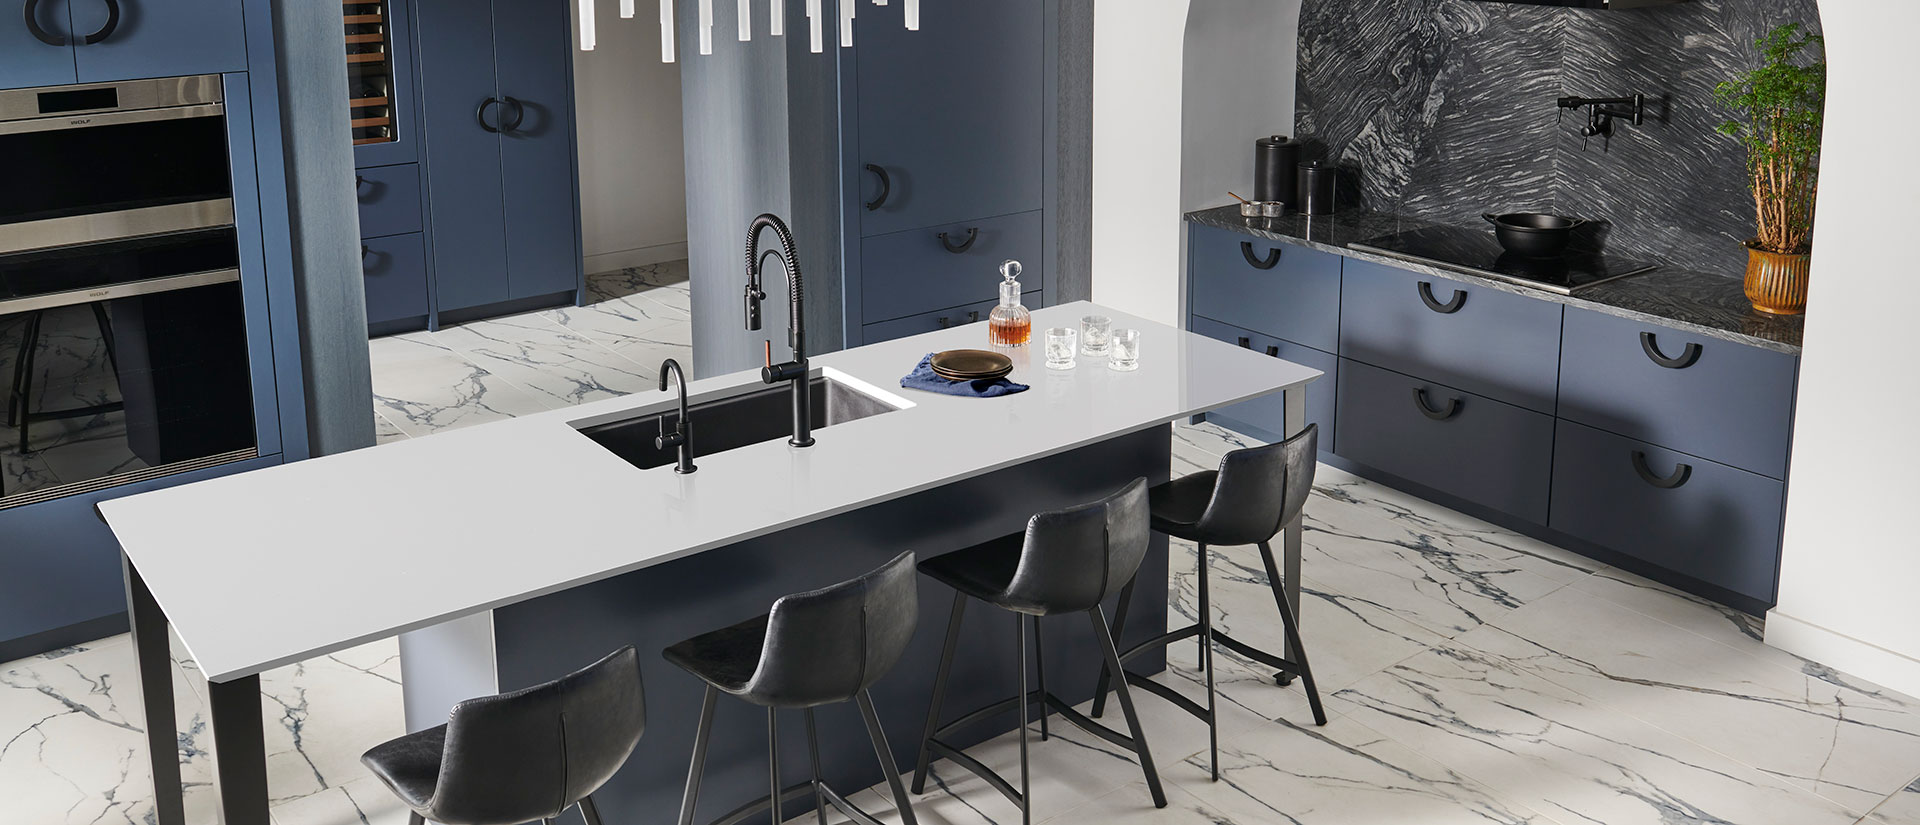 Stellar White Quartz countertop in a luxurious and glamorous kitchen